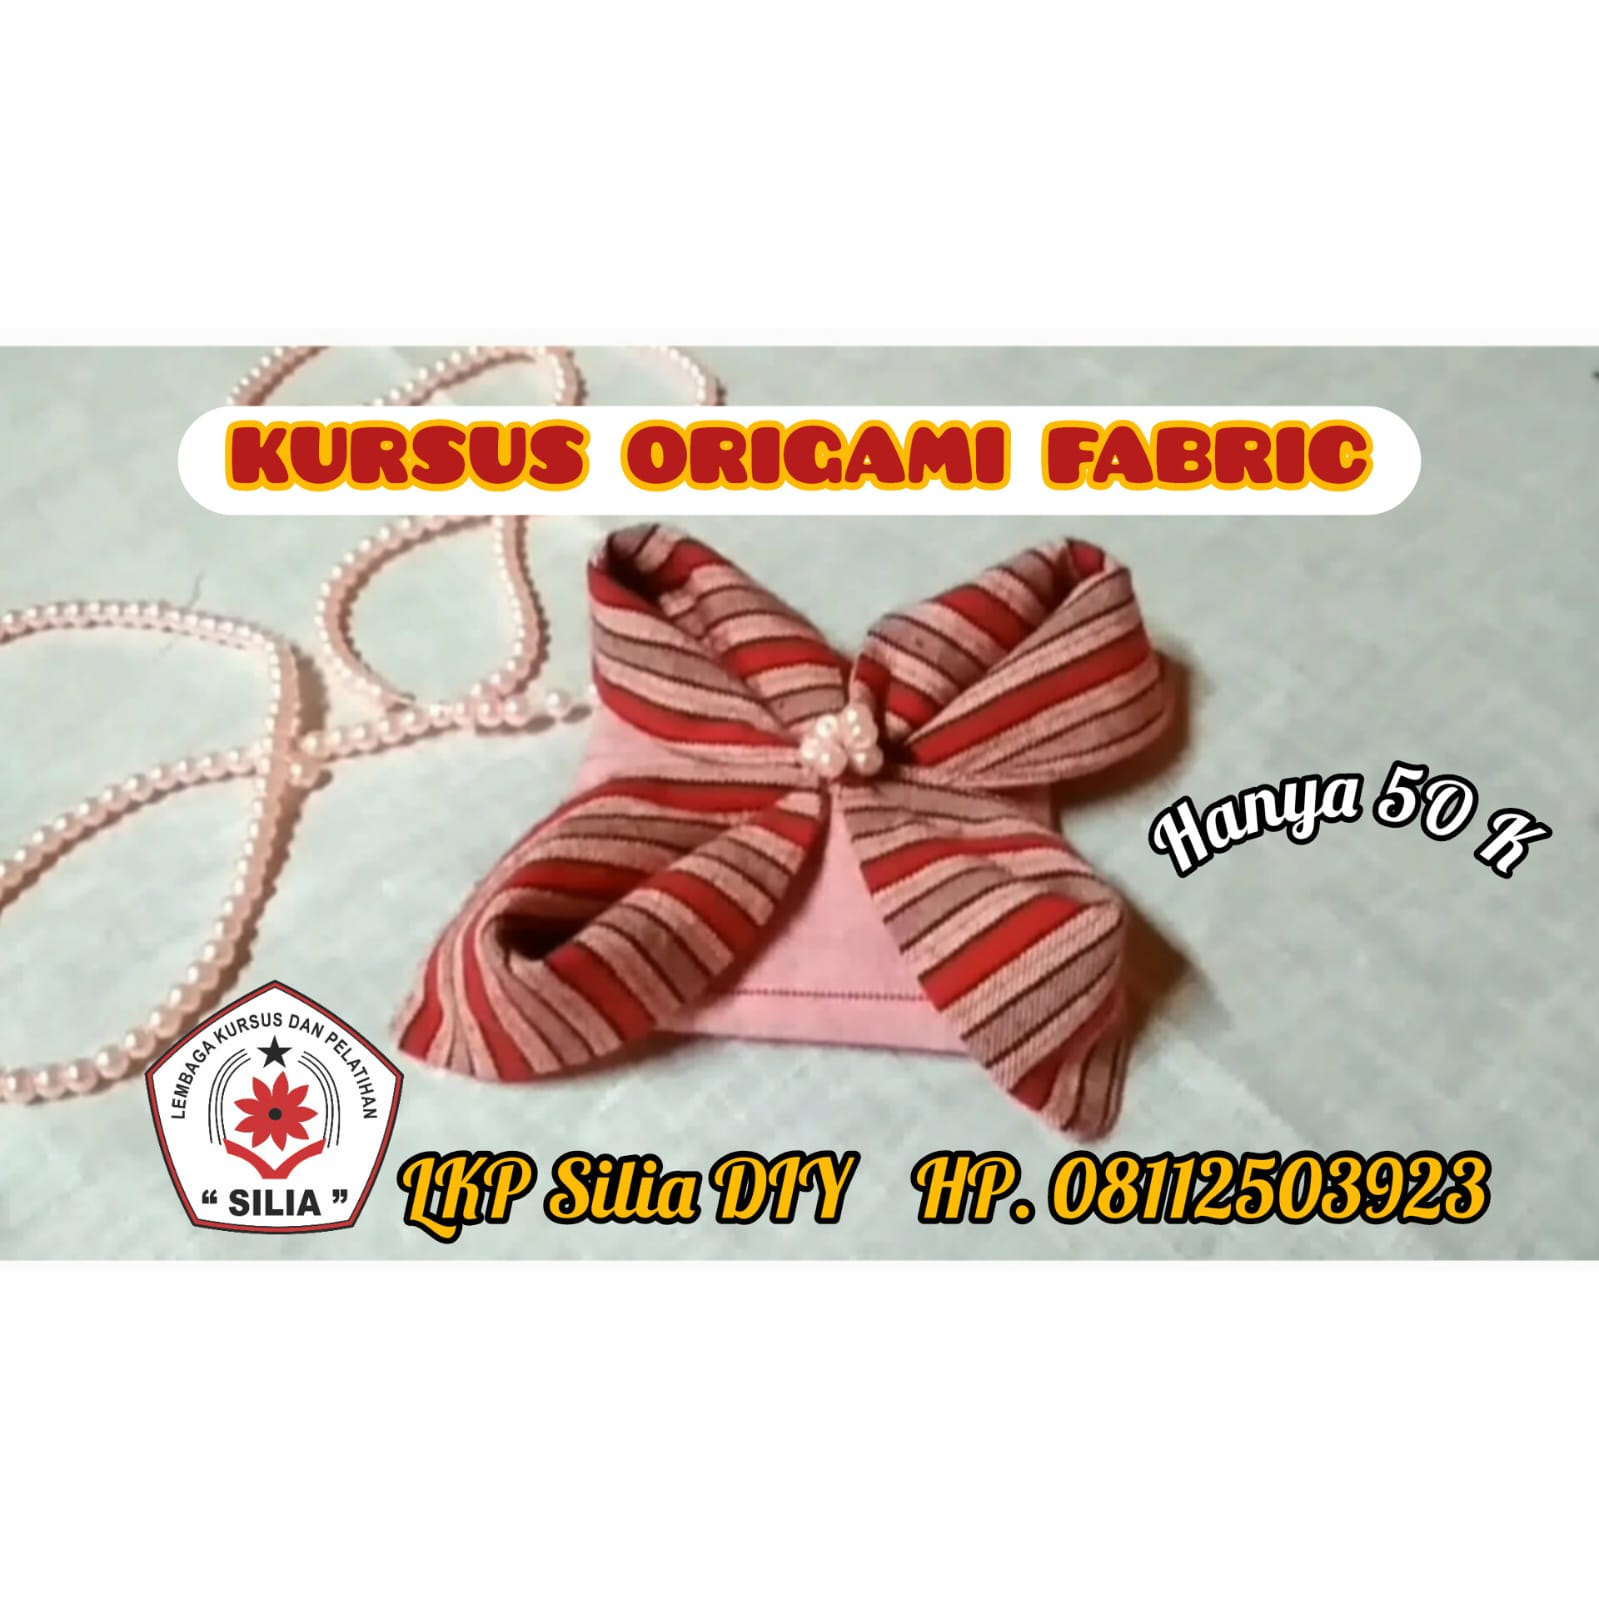 Origami Fabric